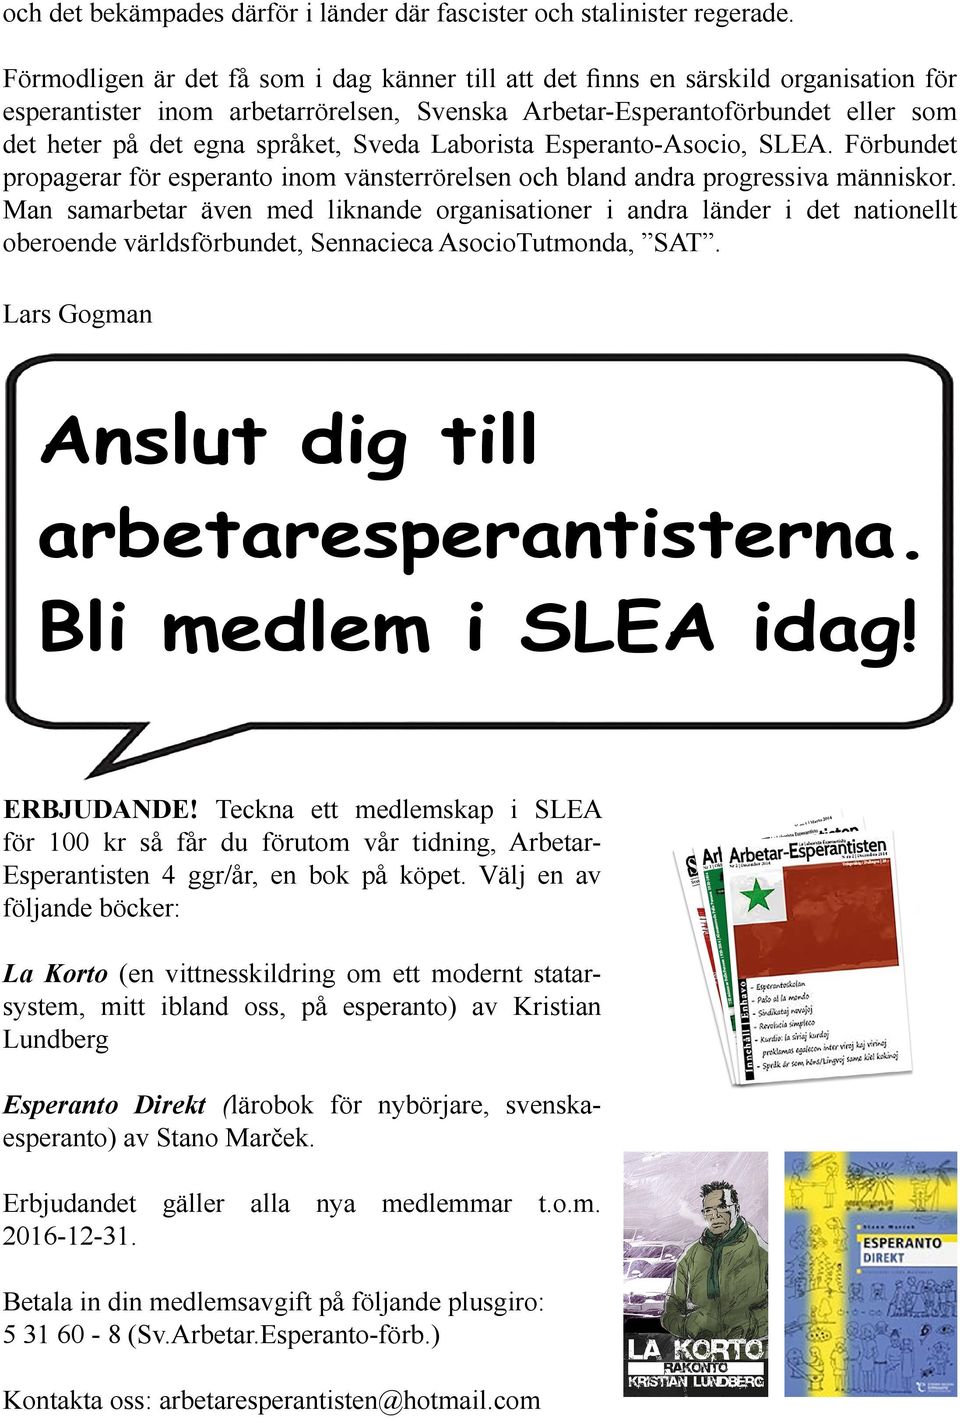 språket, Sveda Laborista Esperanto-Asocio, SLEA. Förbundet propagerar för esperanto inom vänsterrörelsen och bland andra progressiva människor.